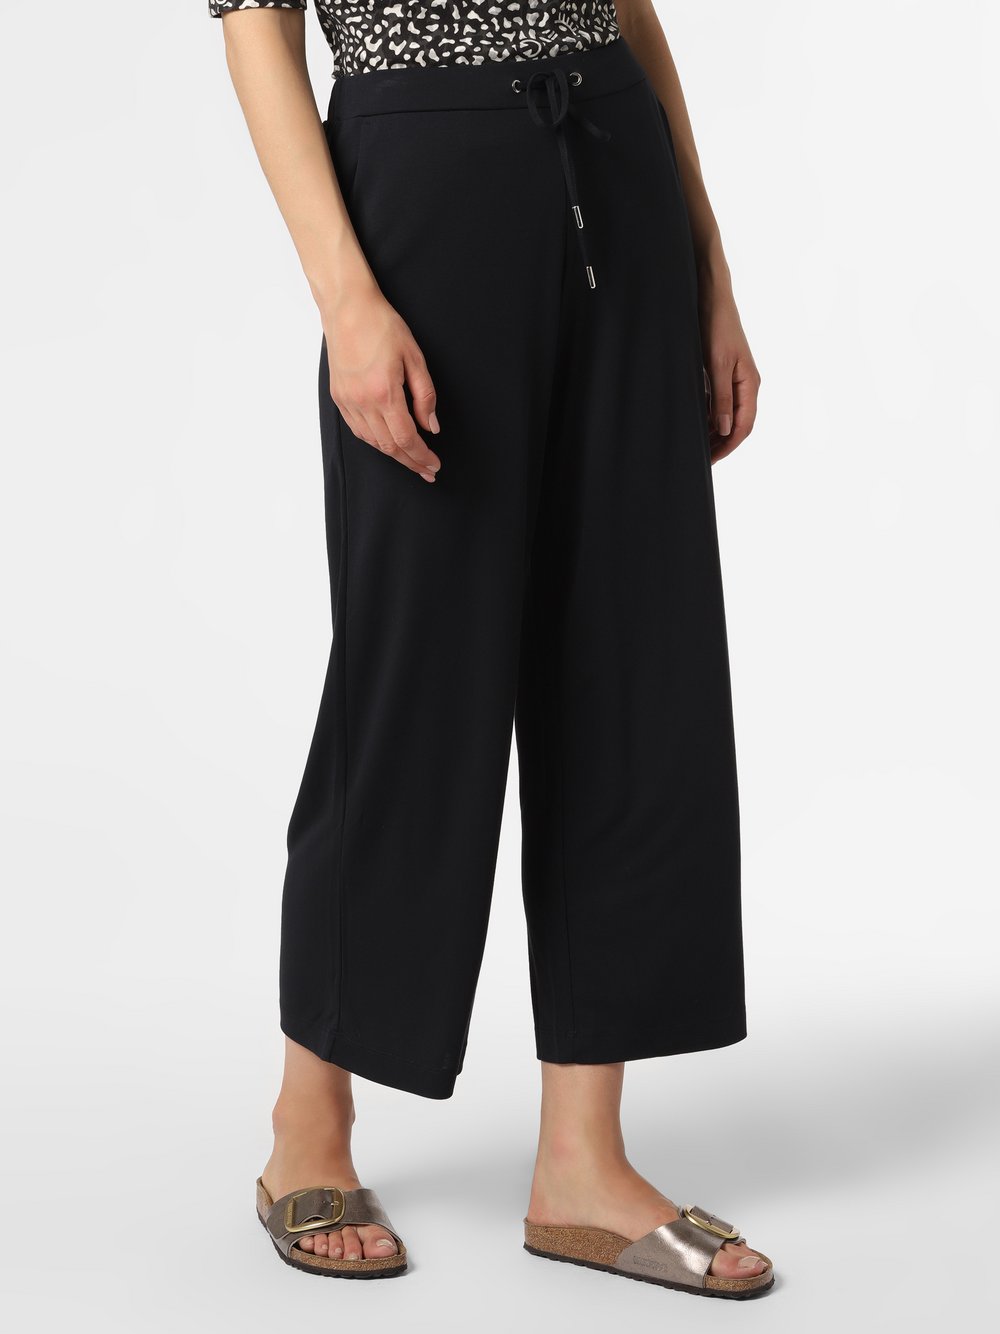 Esprit Collection - Spodnie damskie, czarny